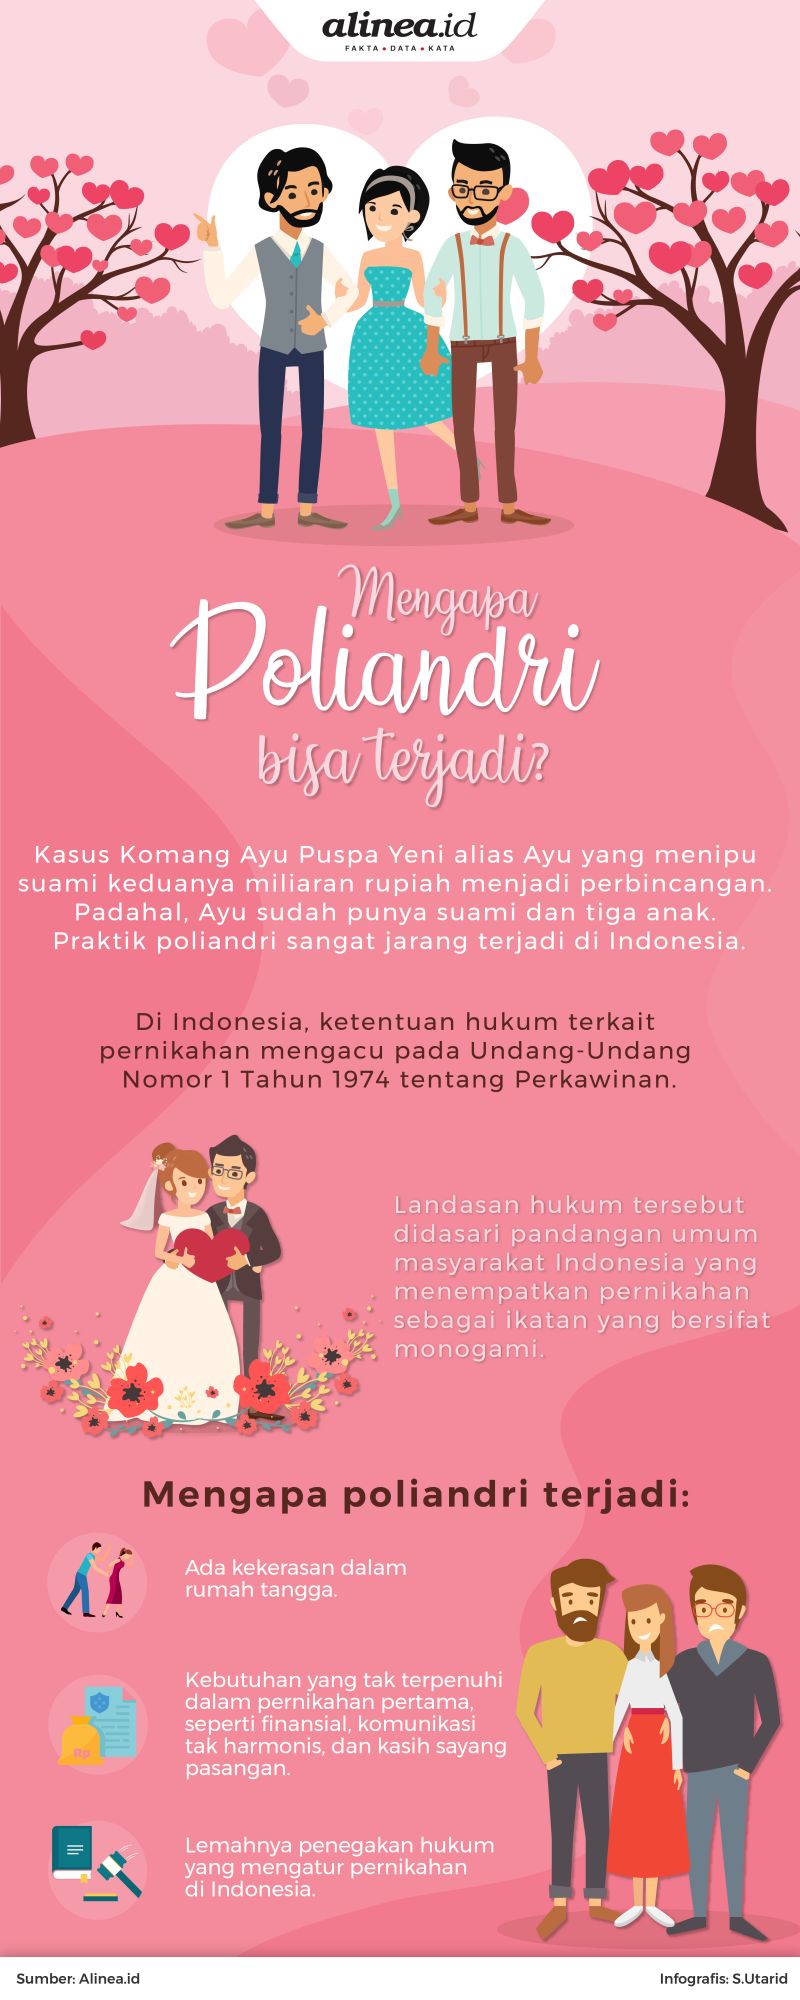 Di Indonesia kasus pernikahan poliandri jarang sekali terjadi.